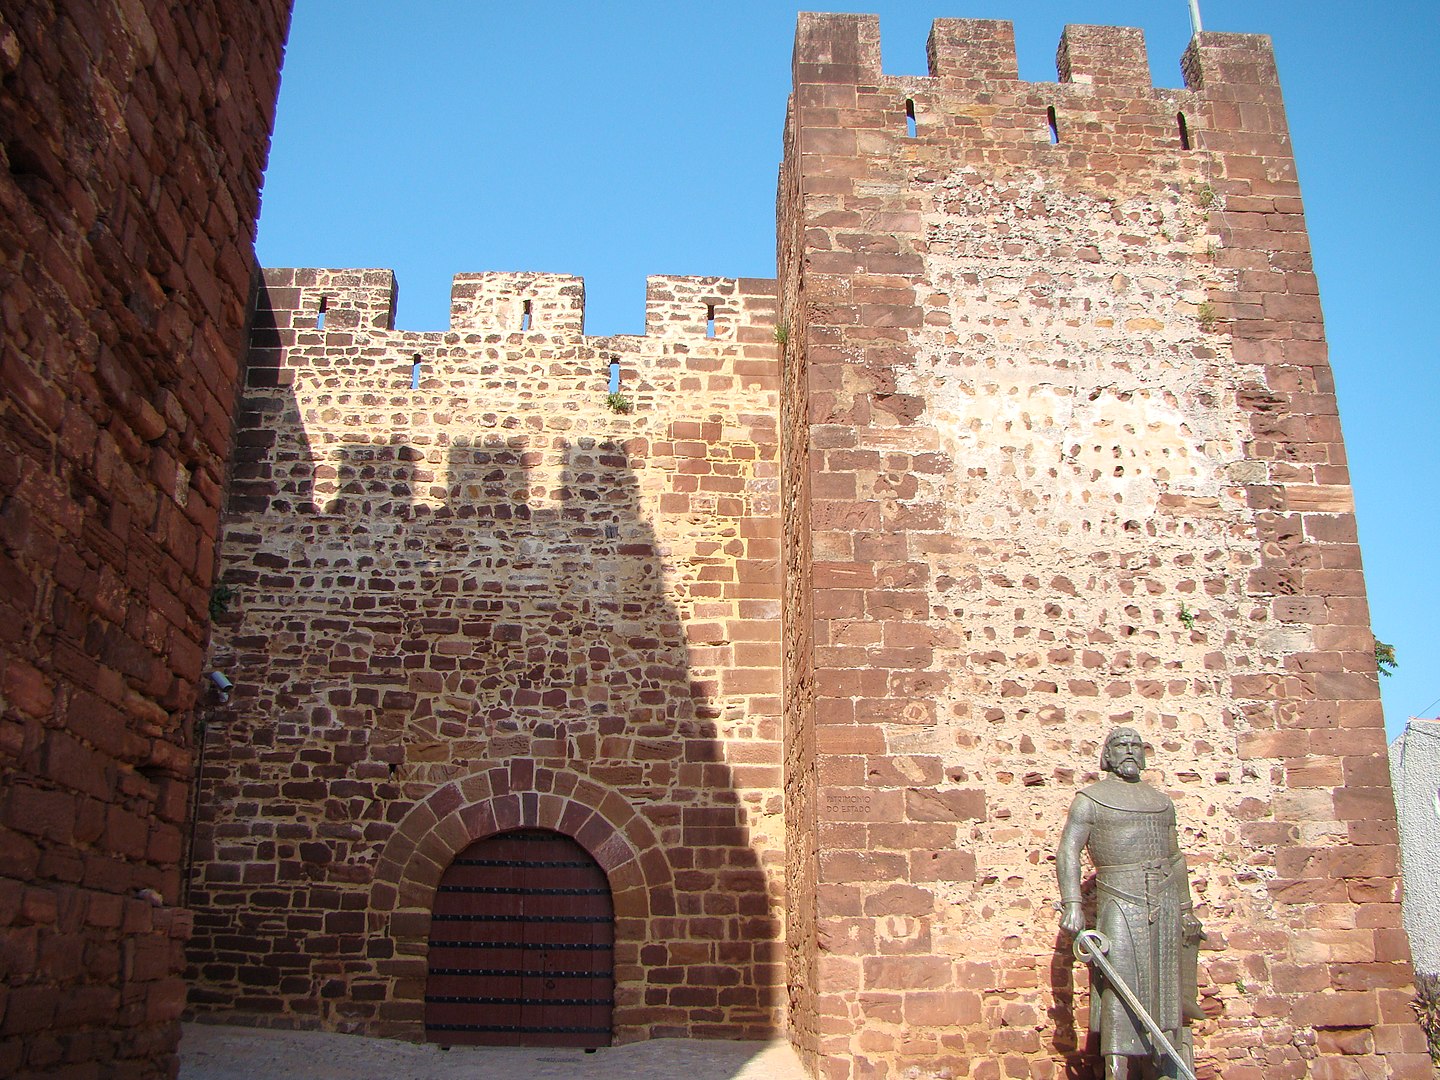 Detalhe da entrada do Castelo de Silves, no Algarve, um dos exemplares mais bem preservados do período mouro (Foto: Lacobrigo)